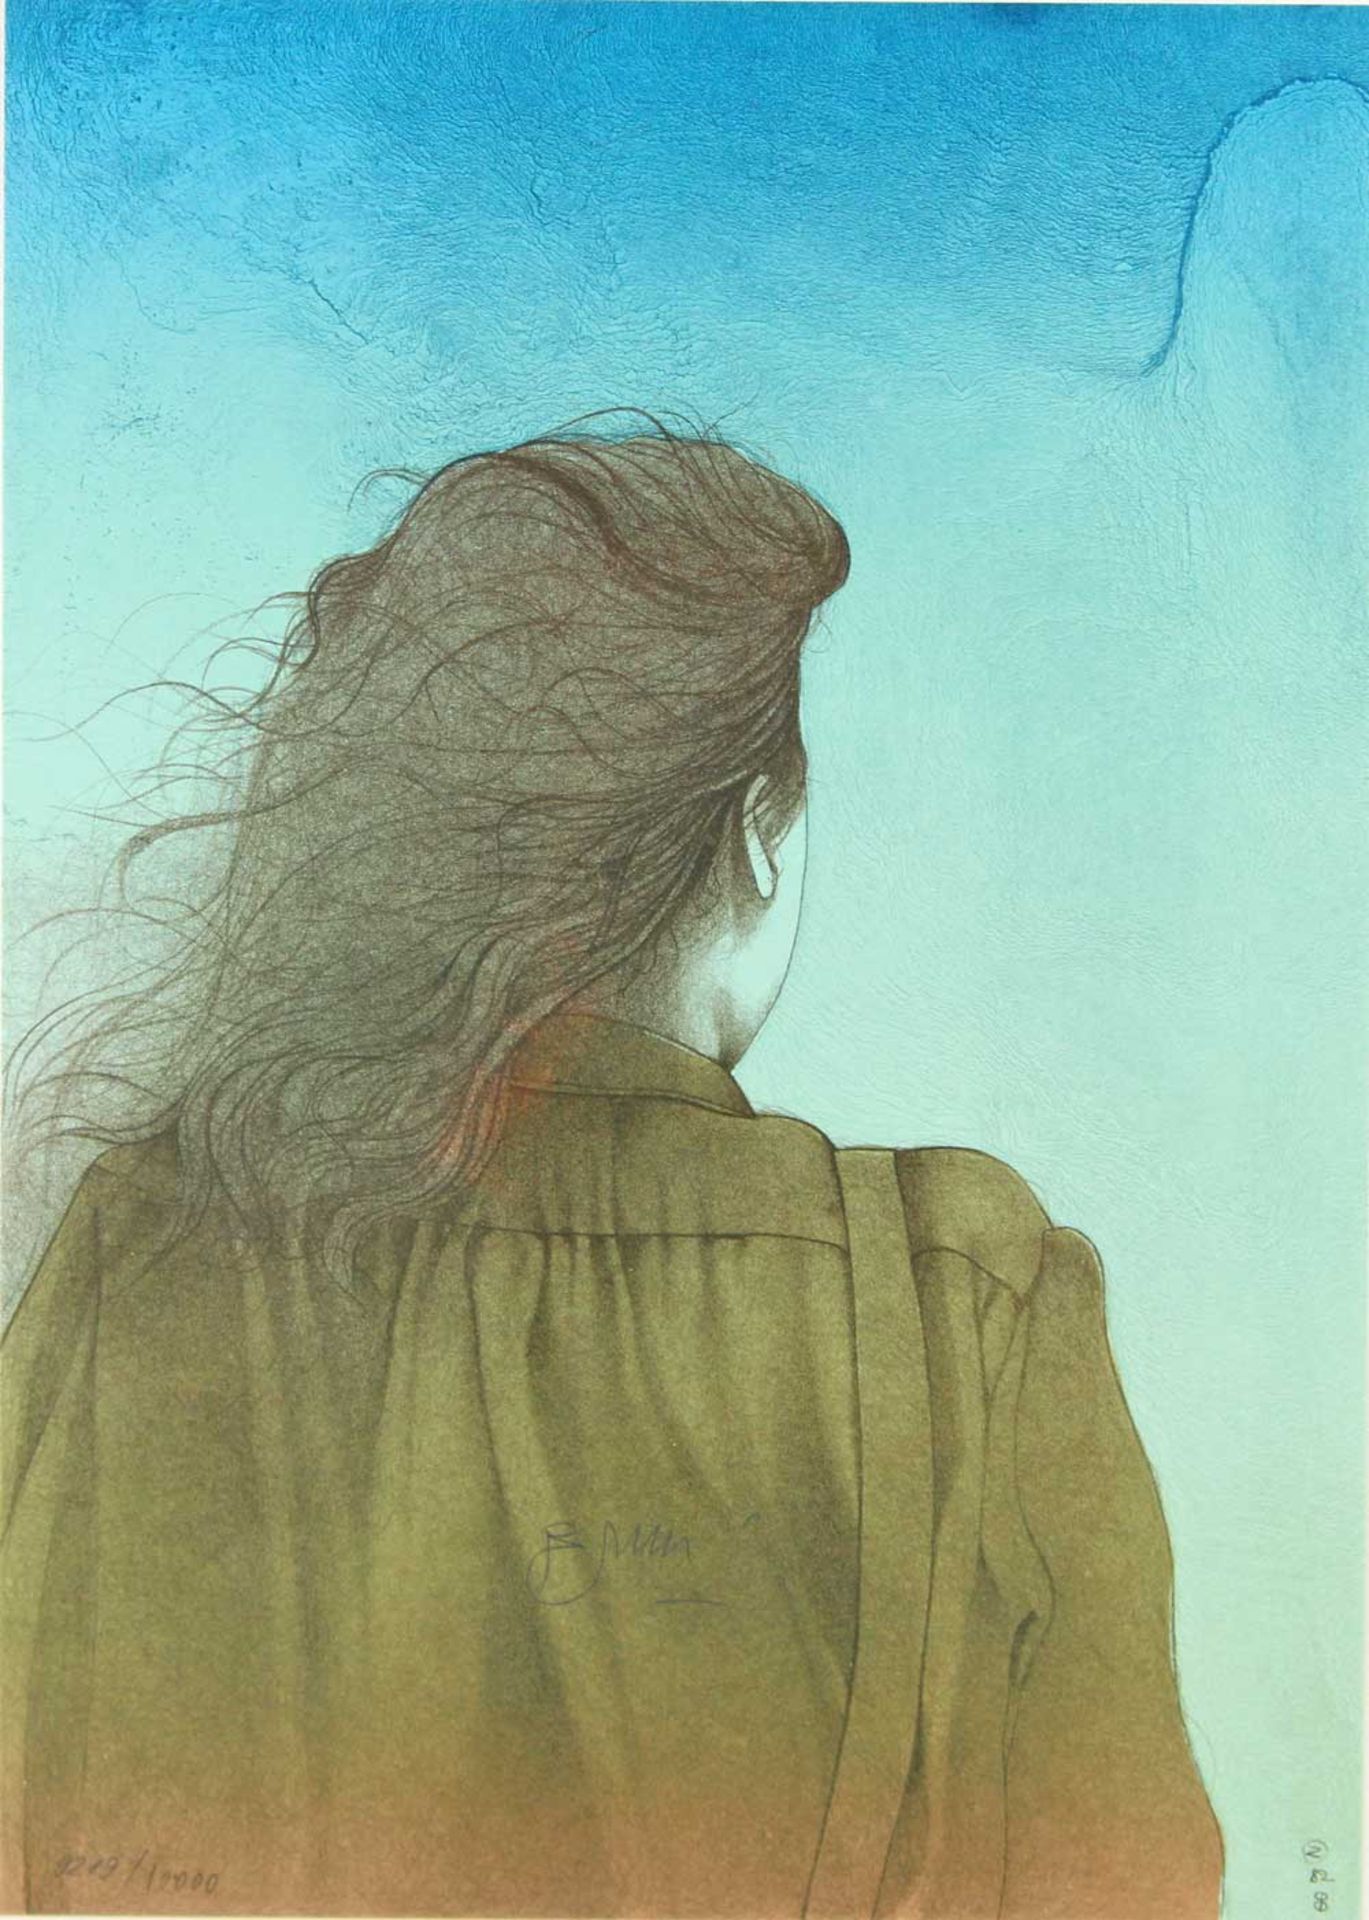 BRUNI, BRUNO (1935): Rückenansicht einer Frau mit braunem haar, 1982. 1 Bl. Farblithografie, u.